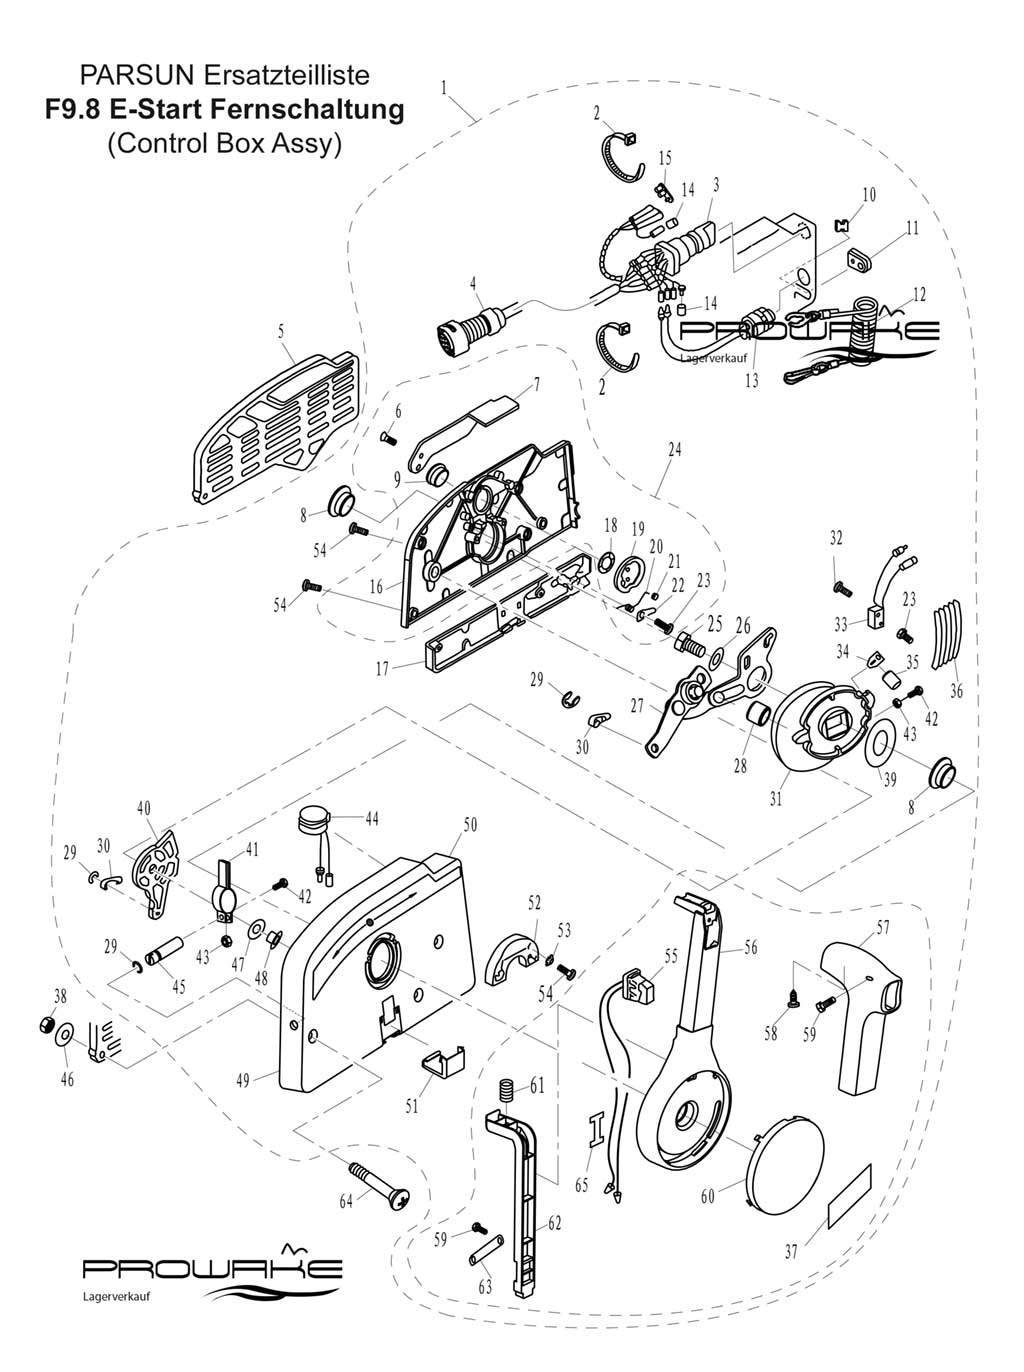 Parsun F9.8  Ersatzteile / Spare Parts: E-Start Fernschaltung